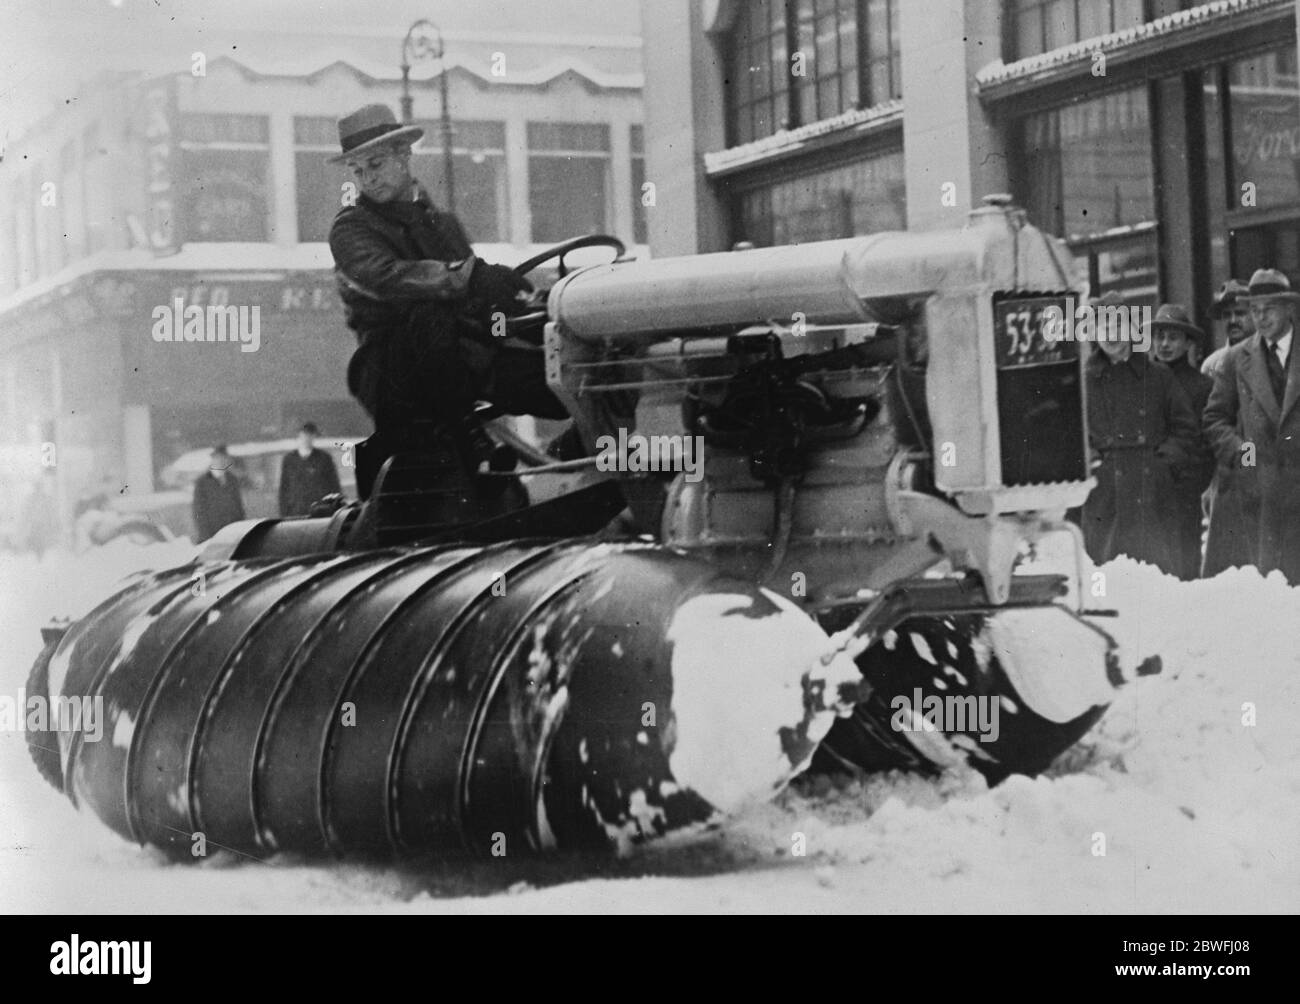 Schneemotoren in New York Schneemotoren, die in den Straßen von New York nach einem schweren Schneesturm am 13. Februar 1926 zu sehen waren Stockfoto